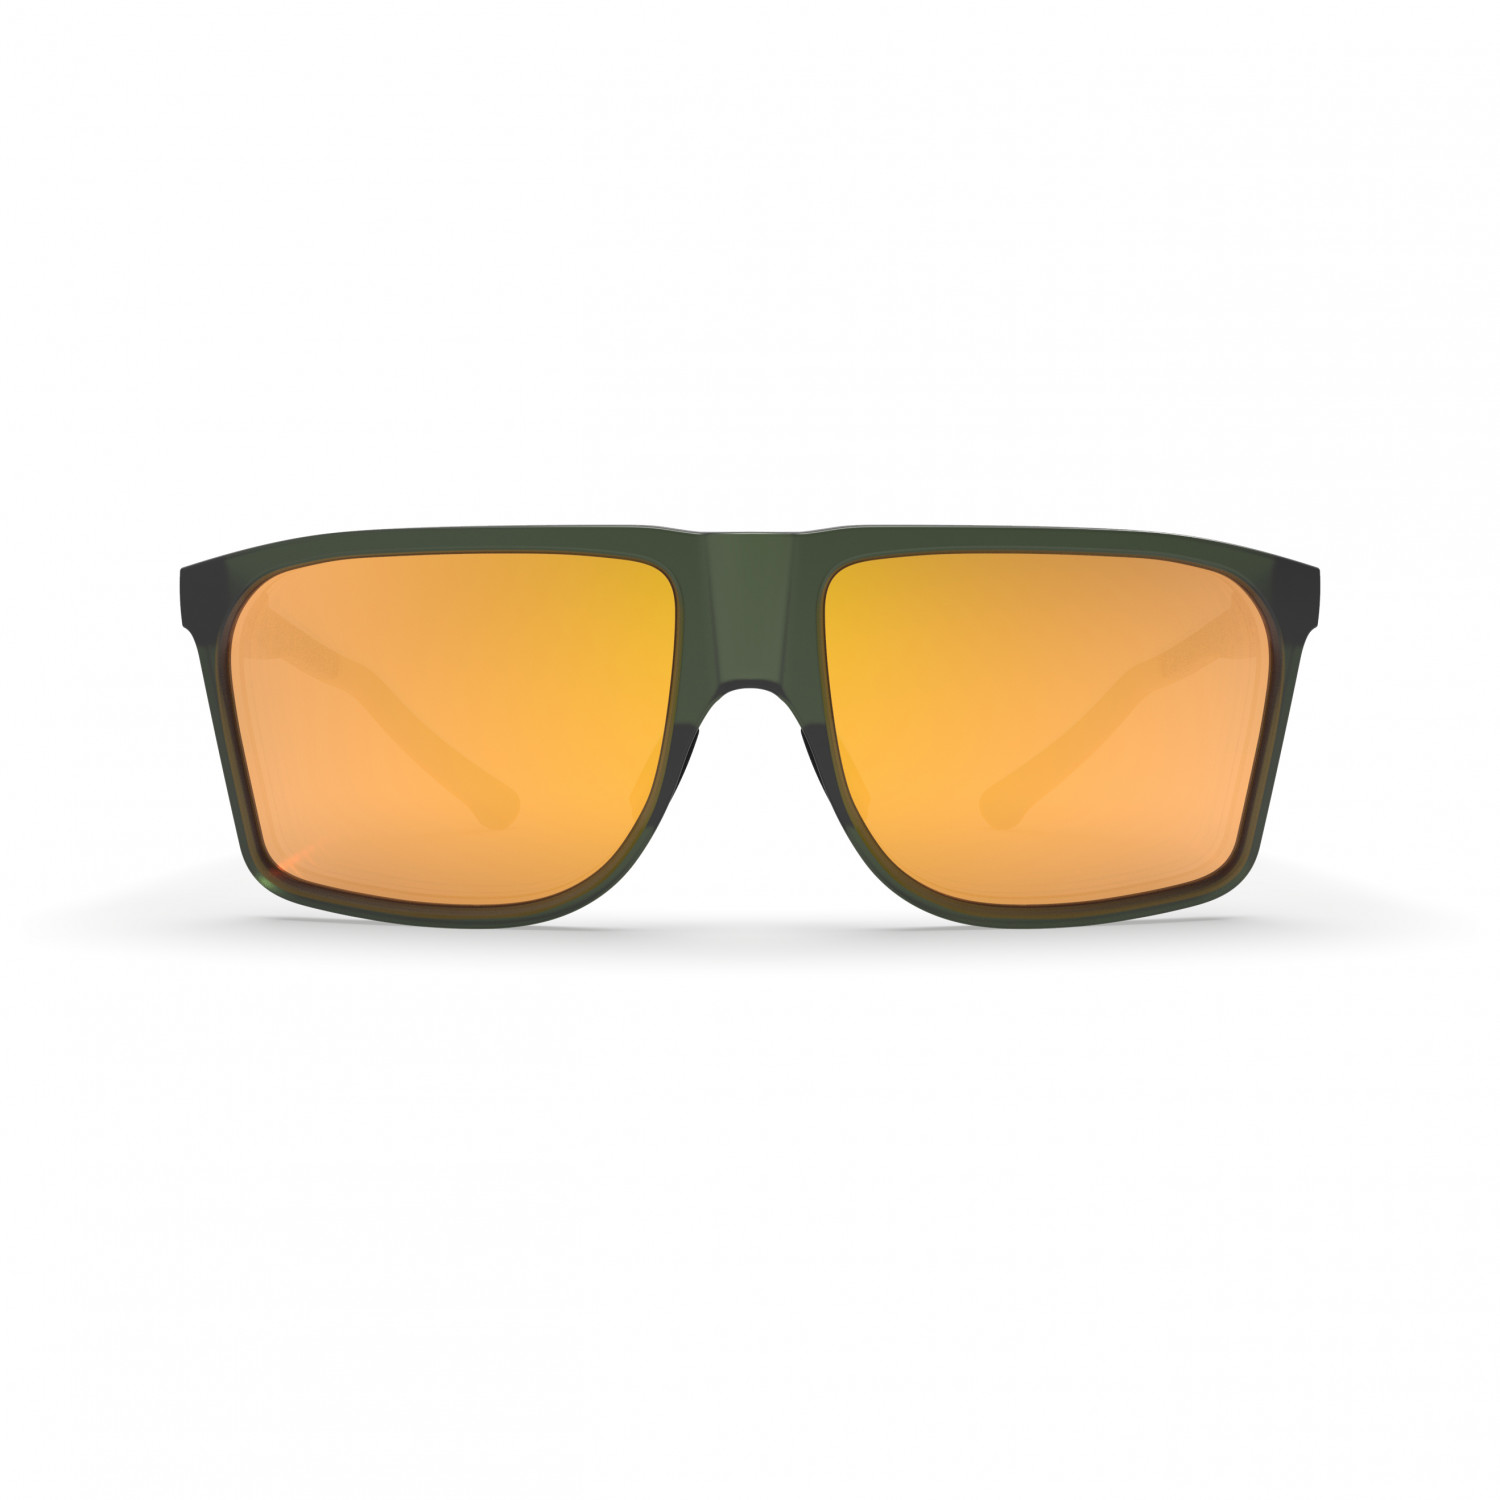 Солнцезащитные очки Spektrum Kall Cat: 3 VLT 21%, цвет Moss Green